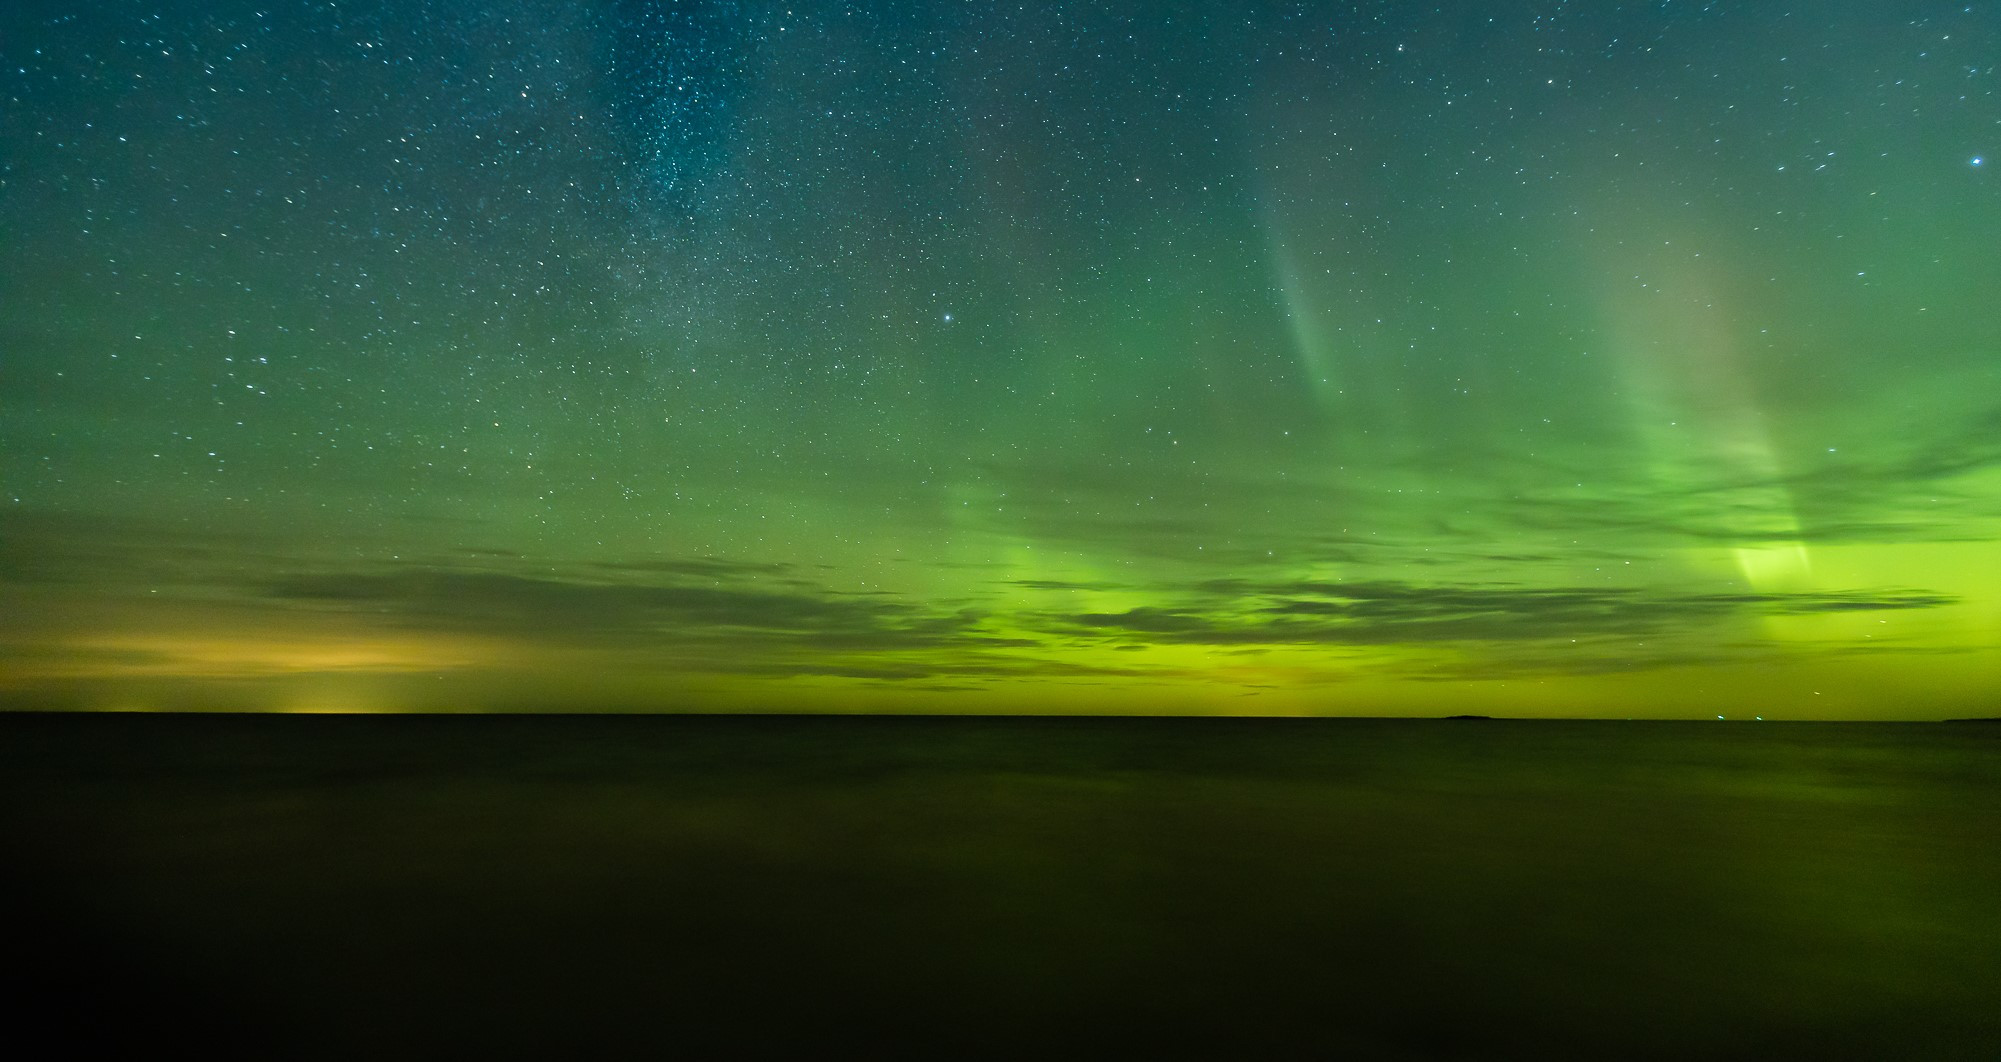 Săn cực quang - dải sáng huyền bí tại Phần Lan khiến du khách ...